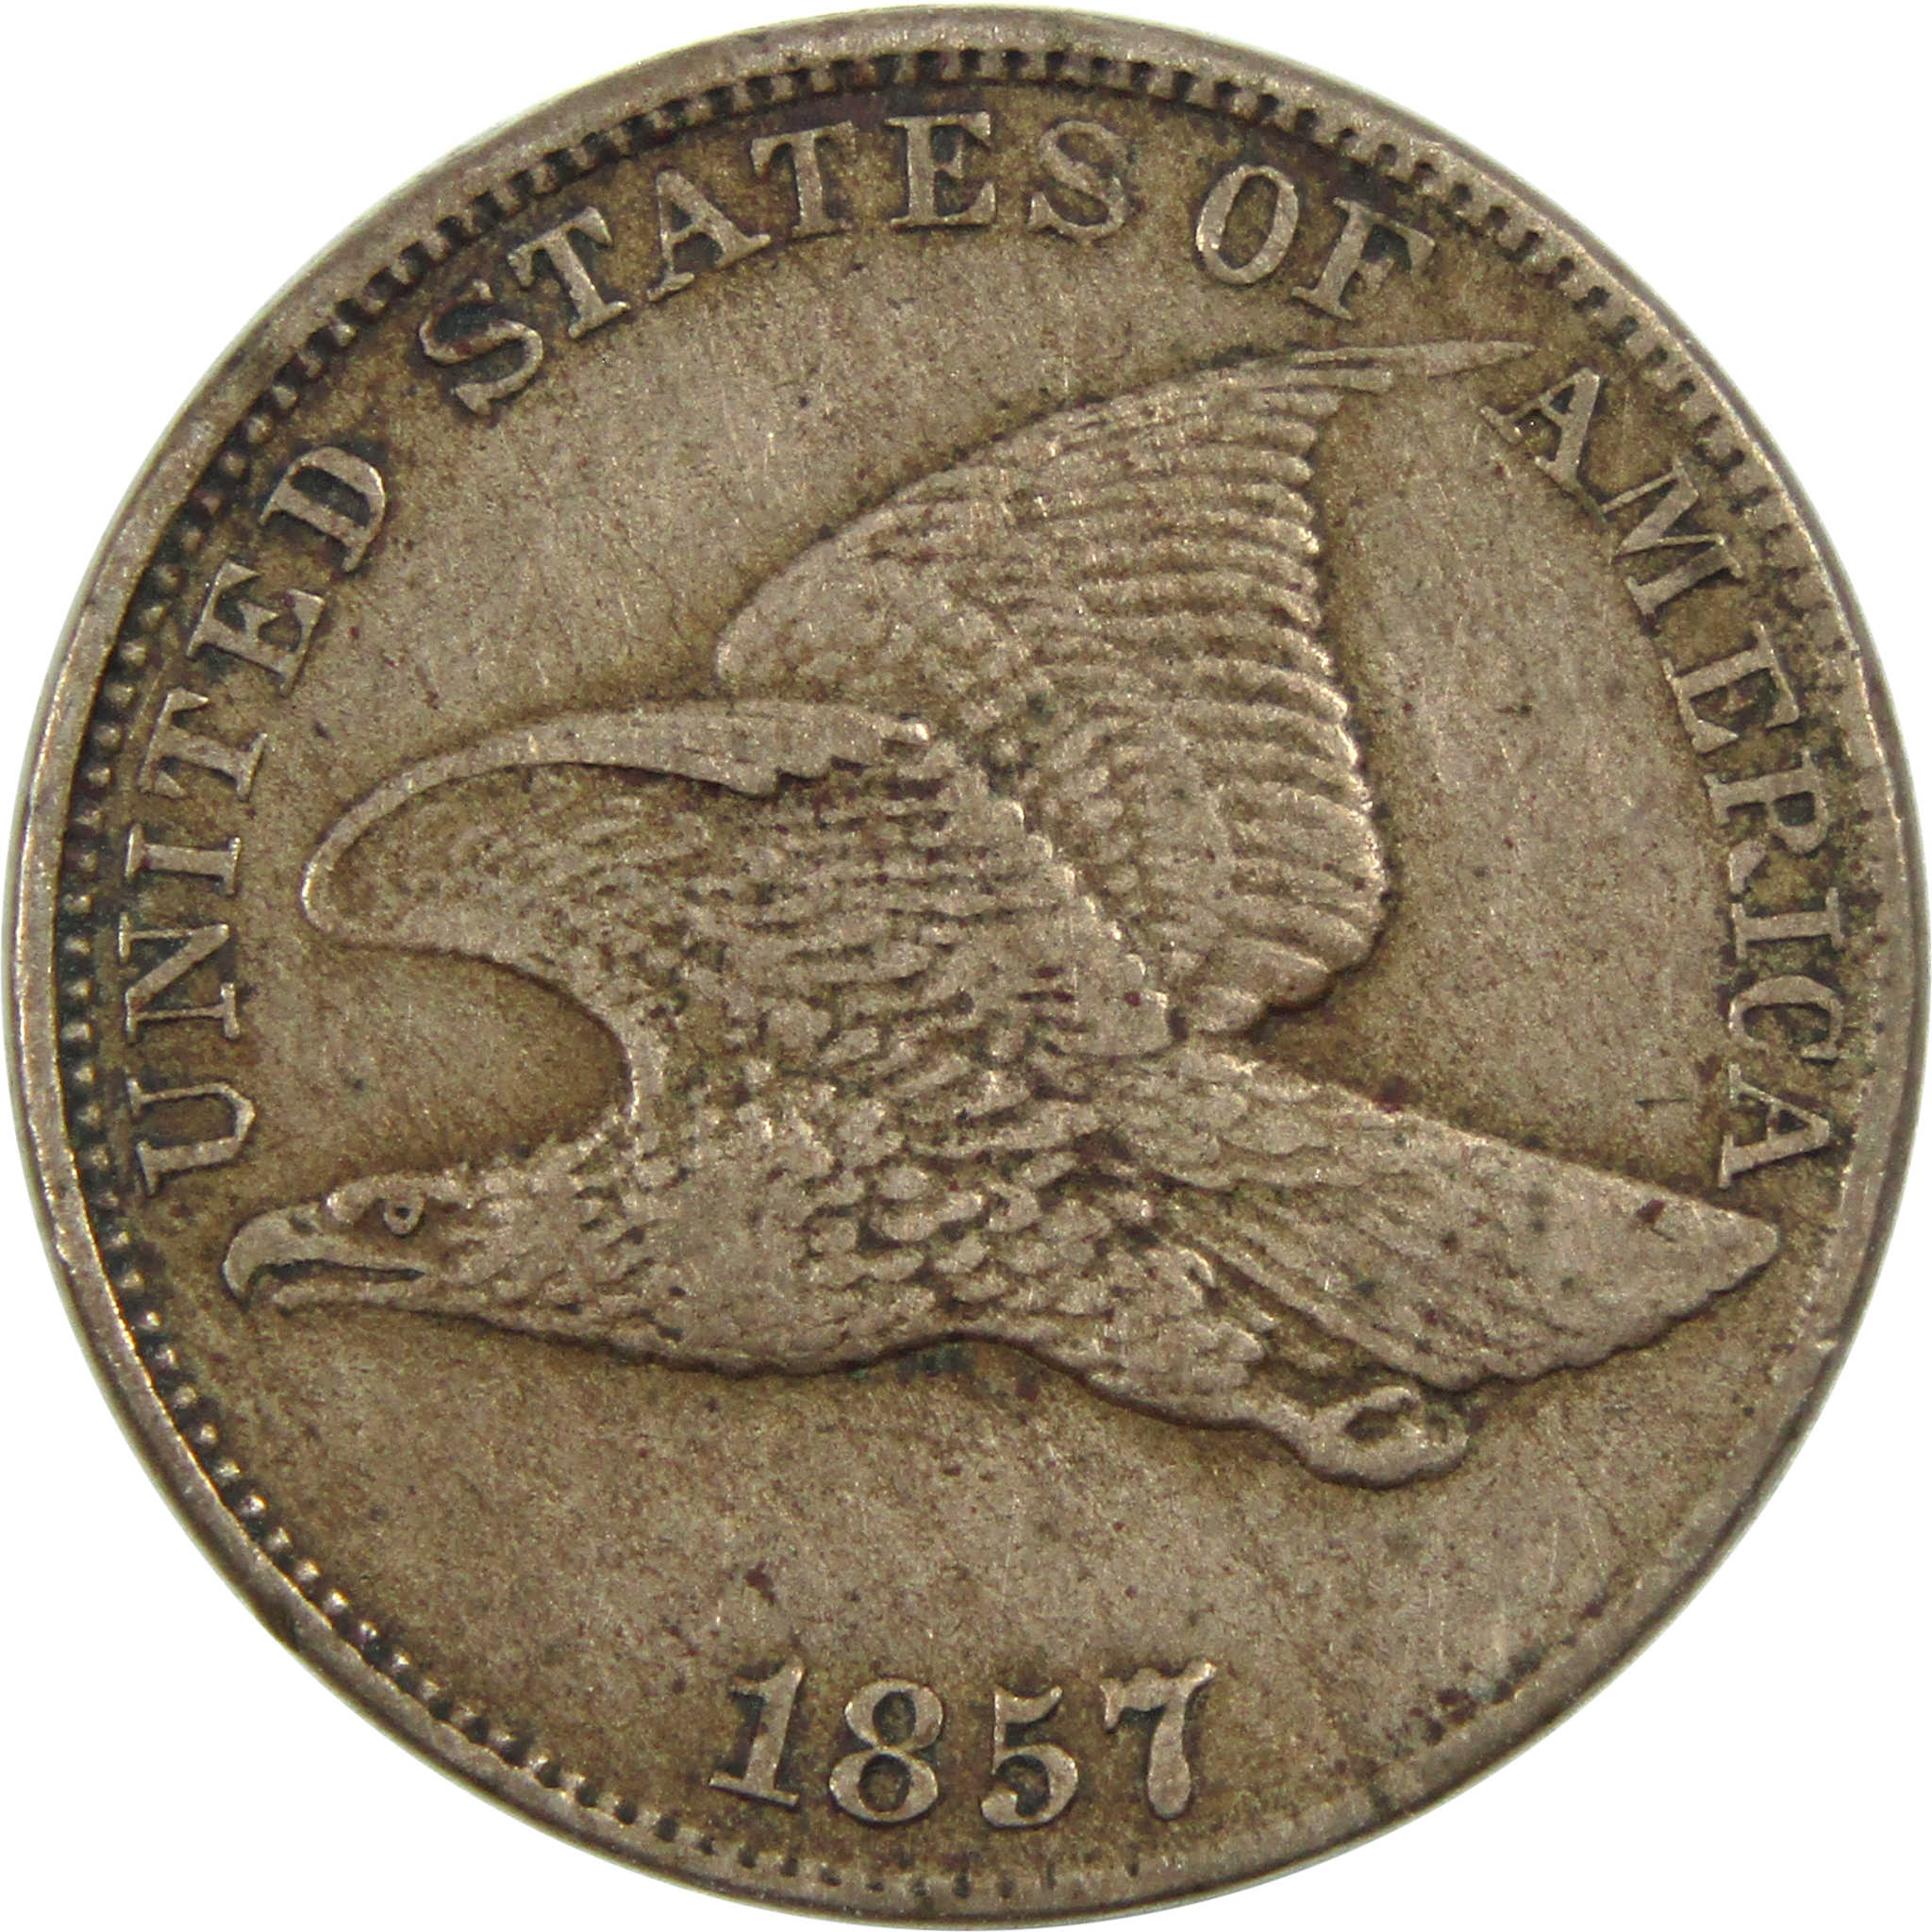 1857 Flying Eagle Cent Very Good Details Copper-Nickel SKU:I12994